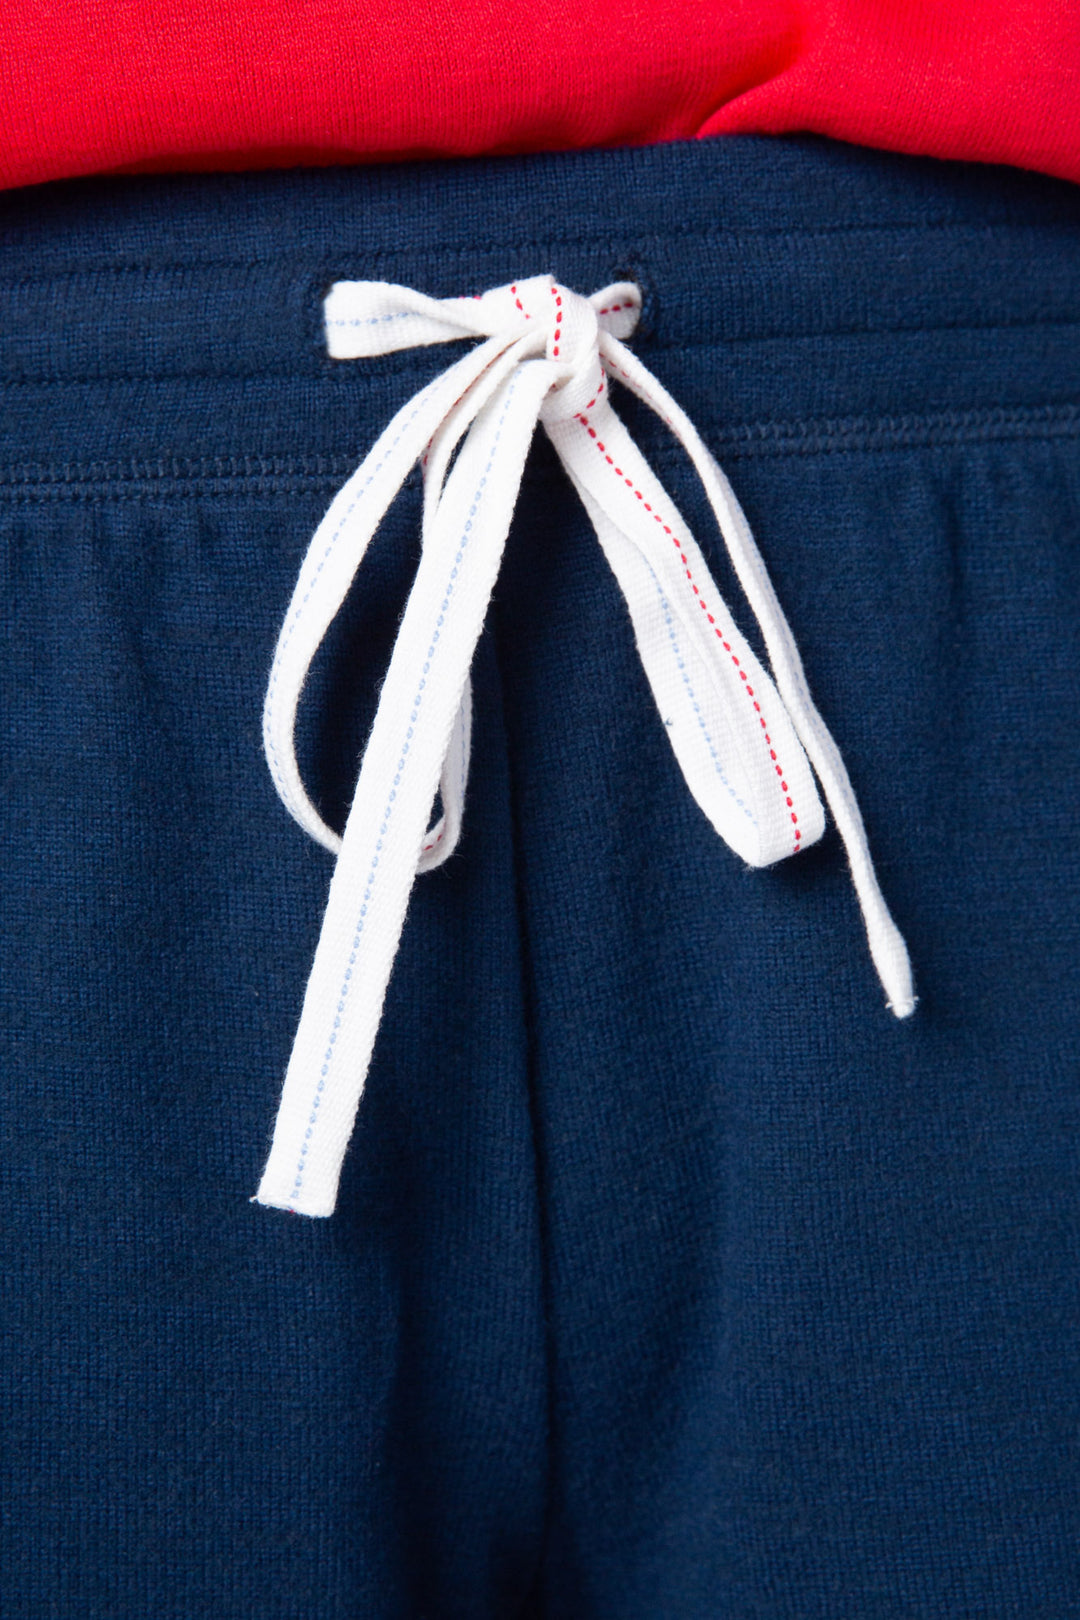 Women's navy blue lounge short w/white & red whipstitching & tie waist.